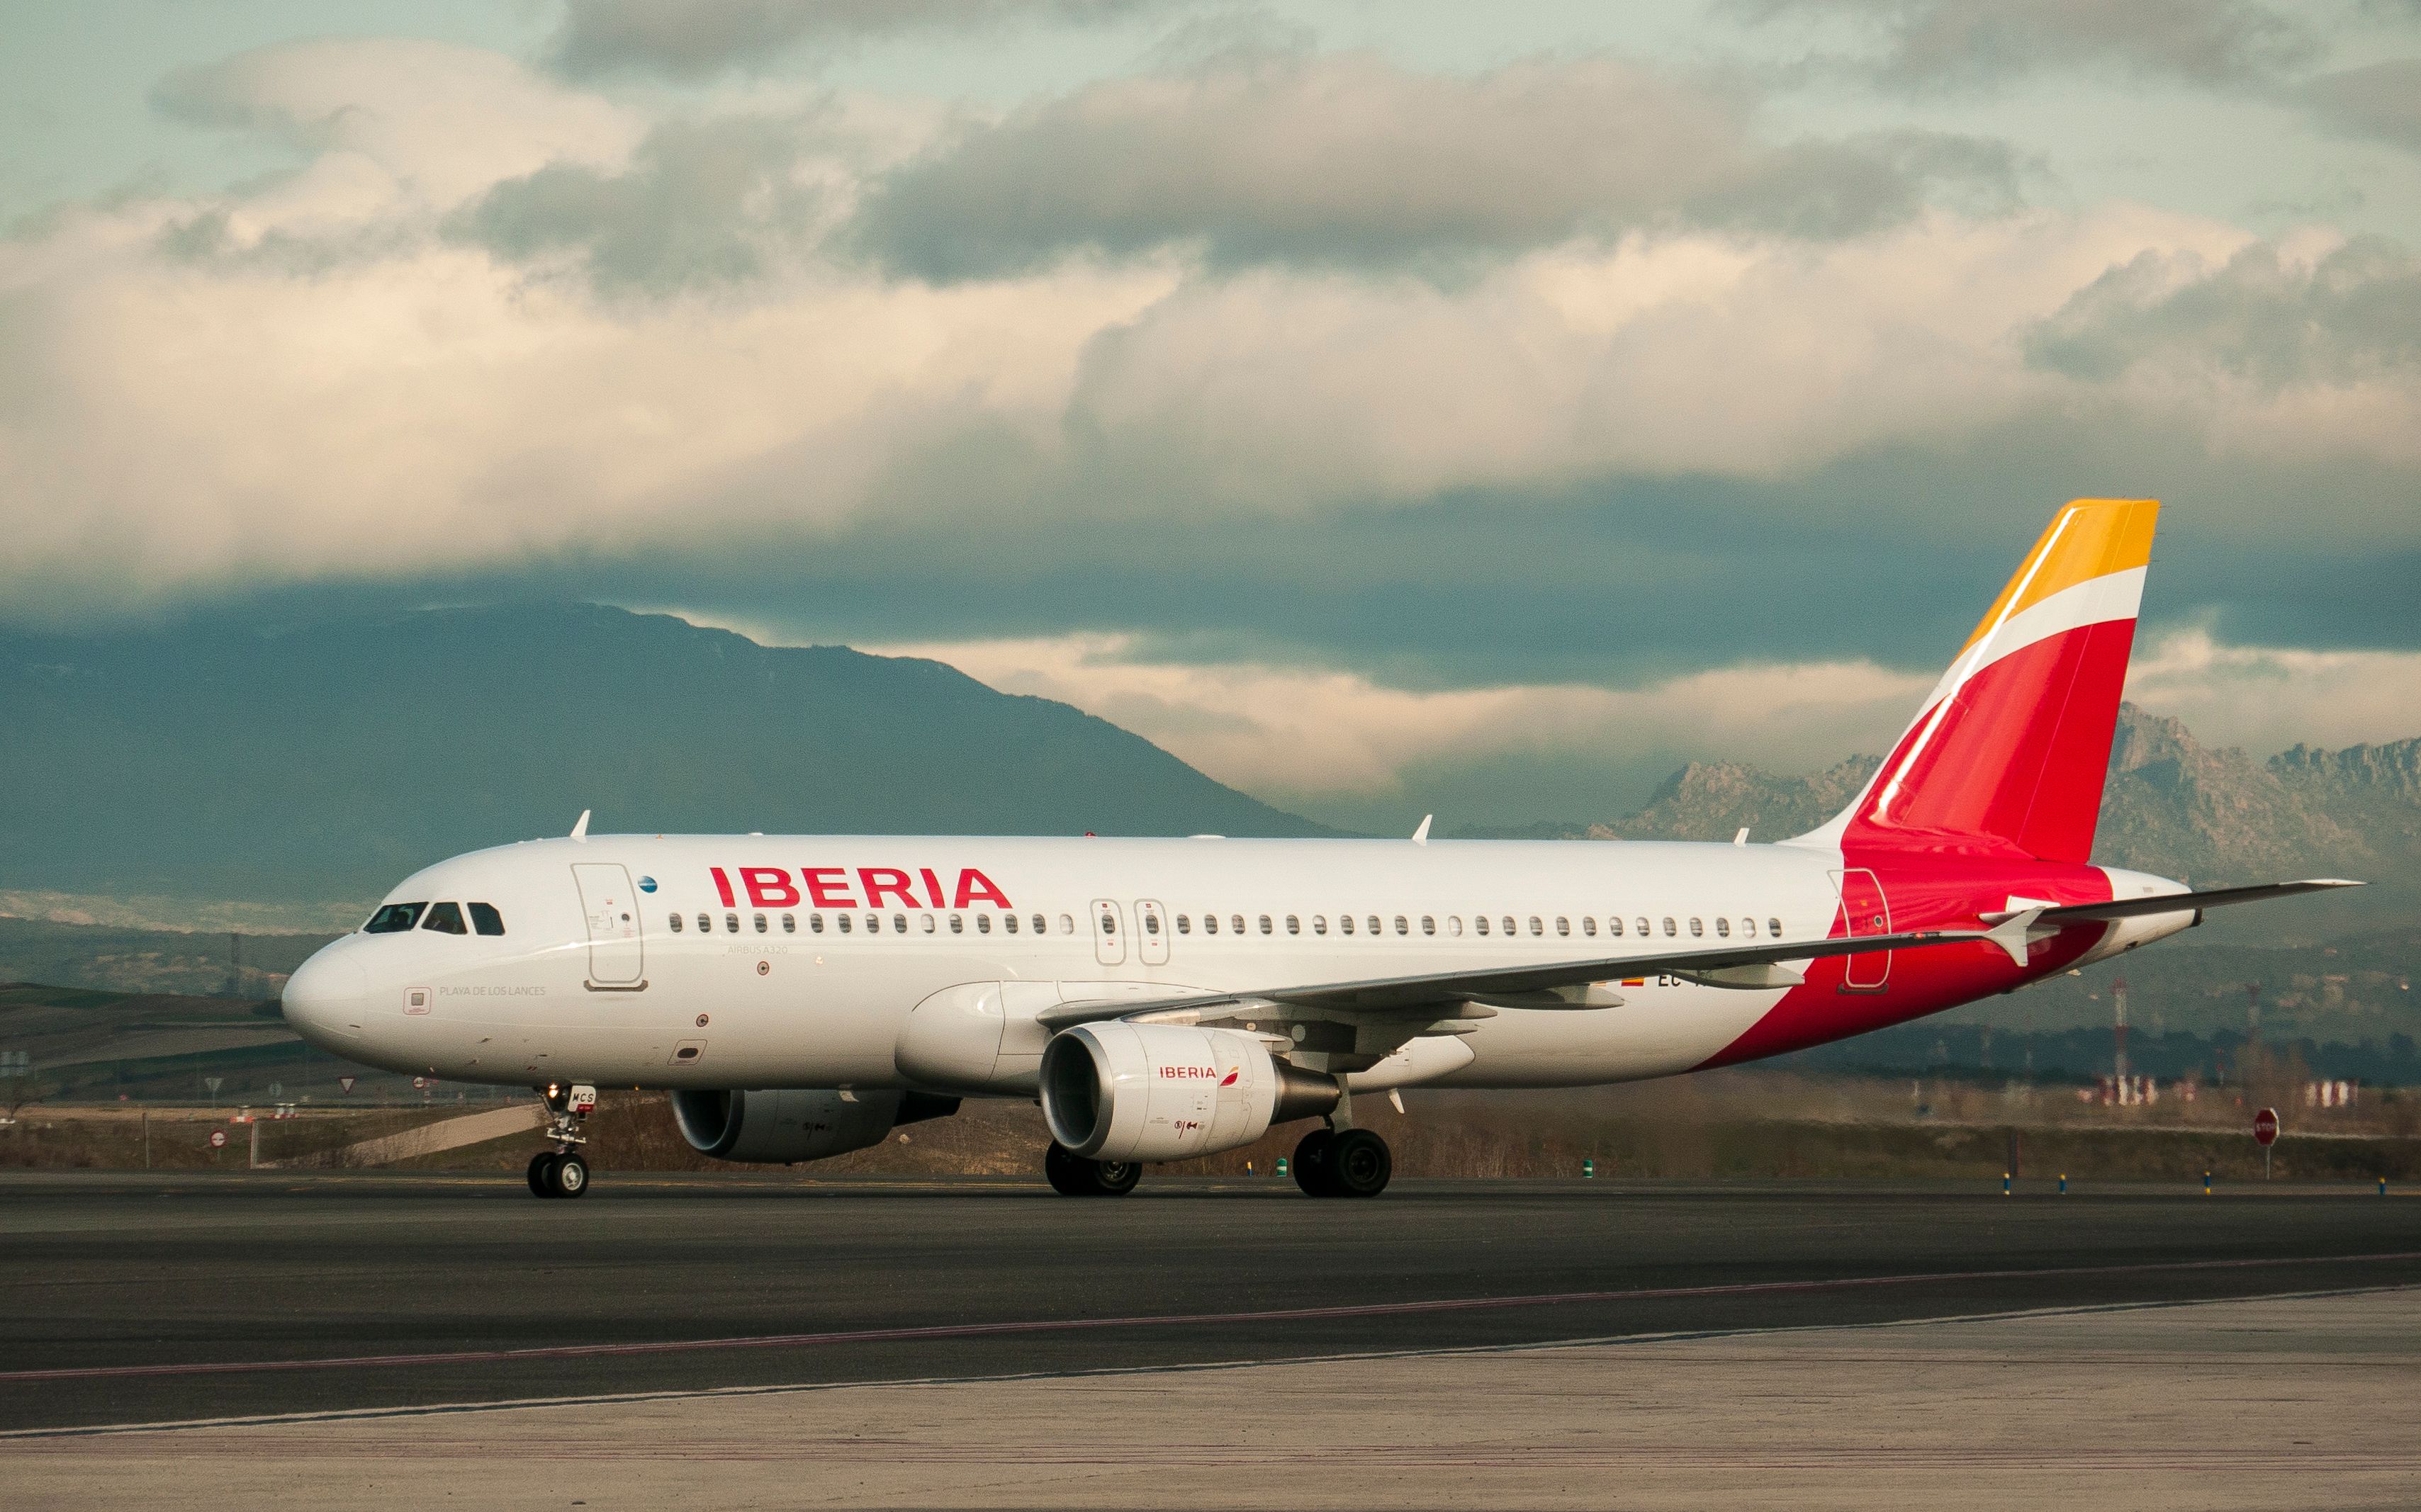 An Iberia aircraft